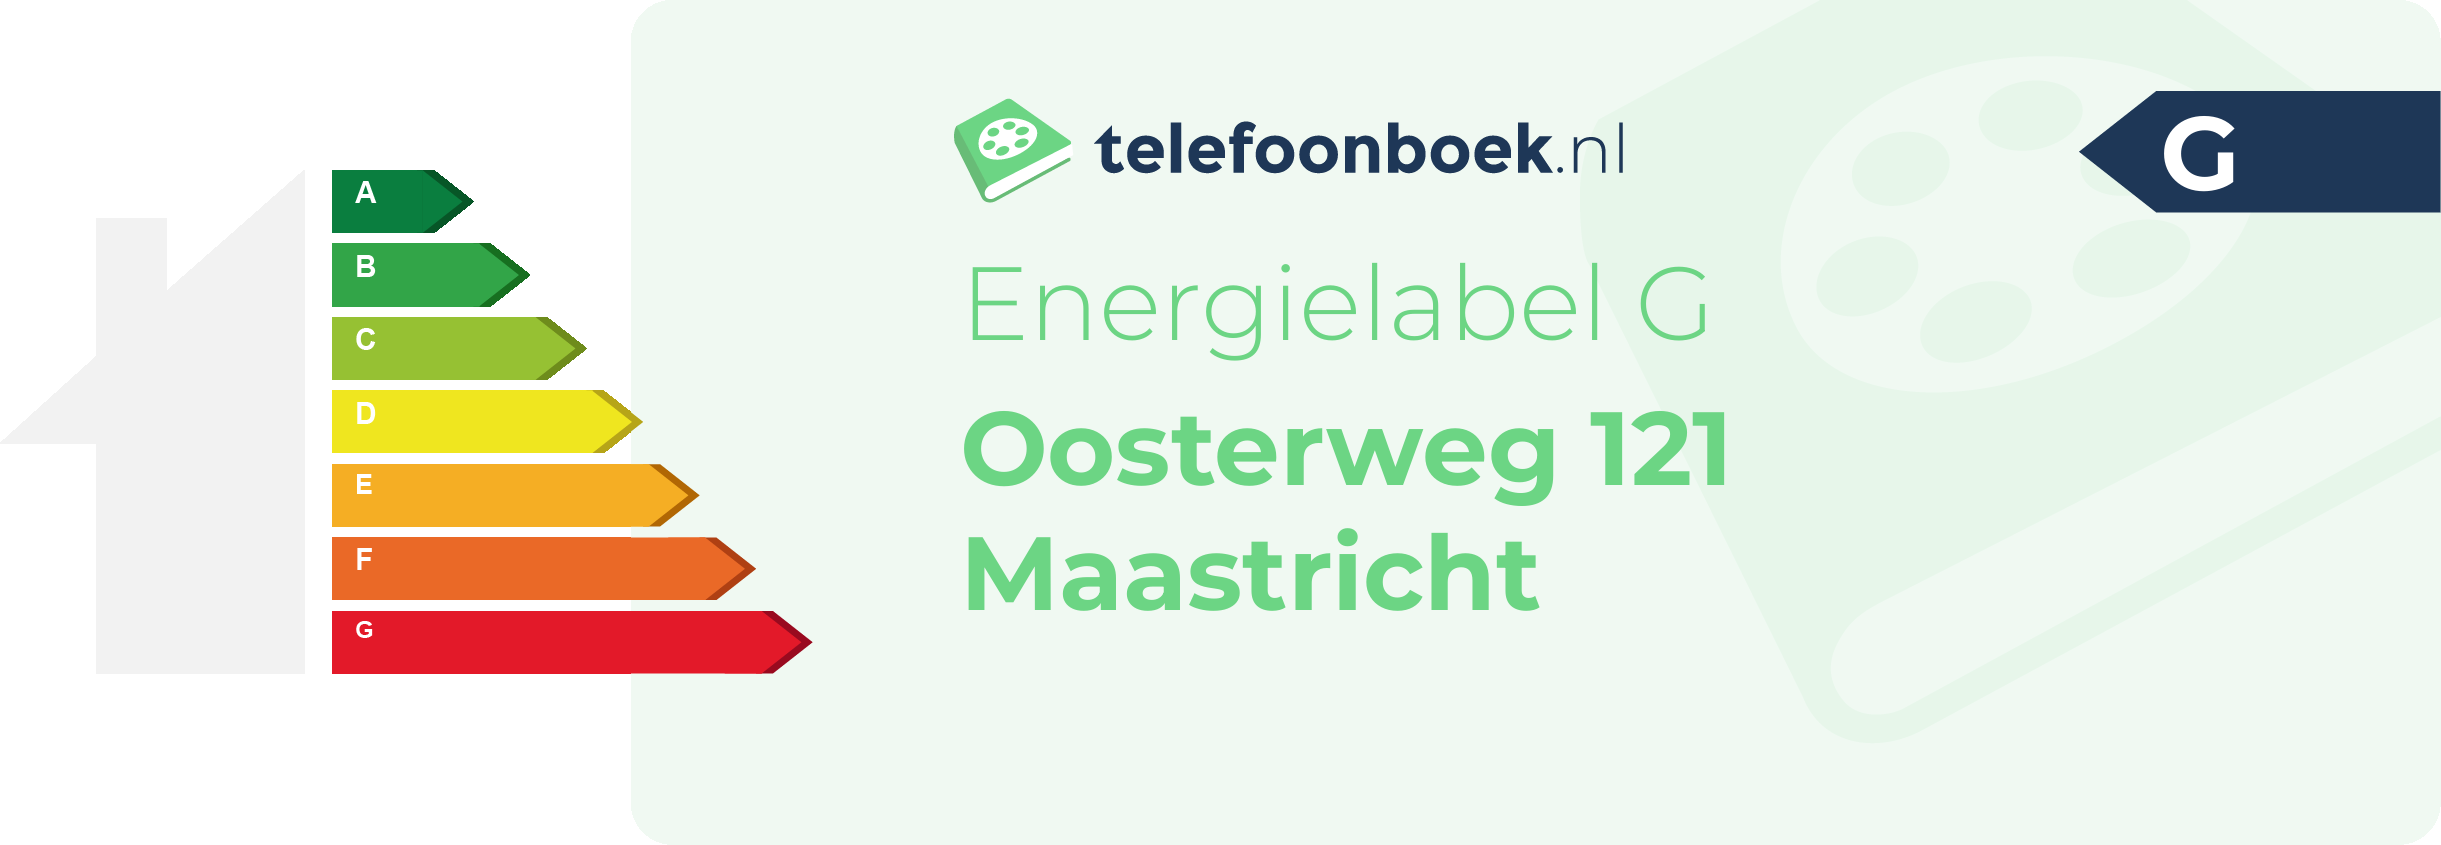 Energielabel Oosterweg 121 Maastricht